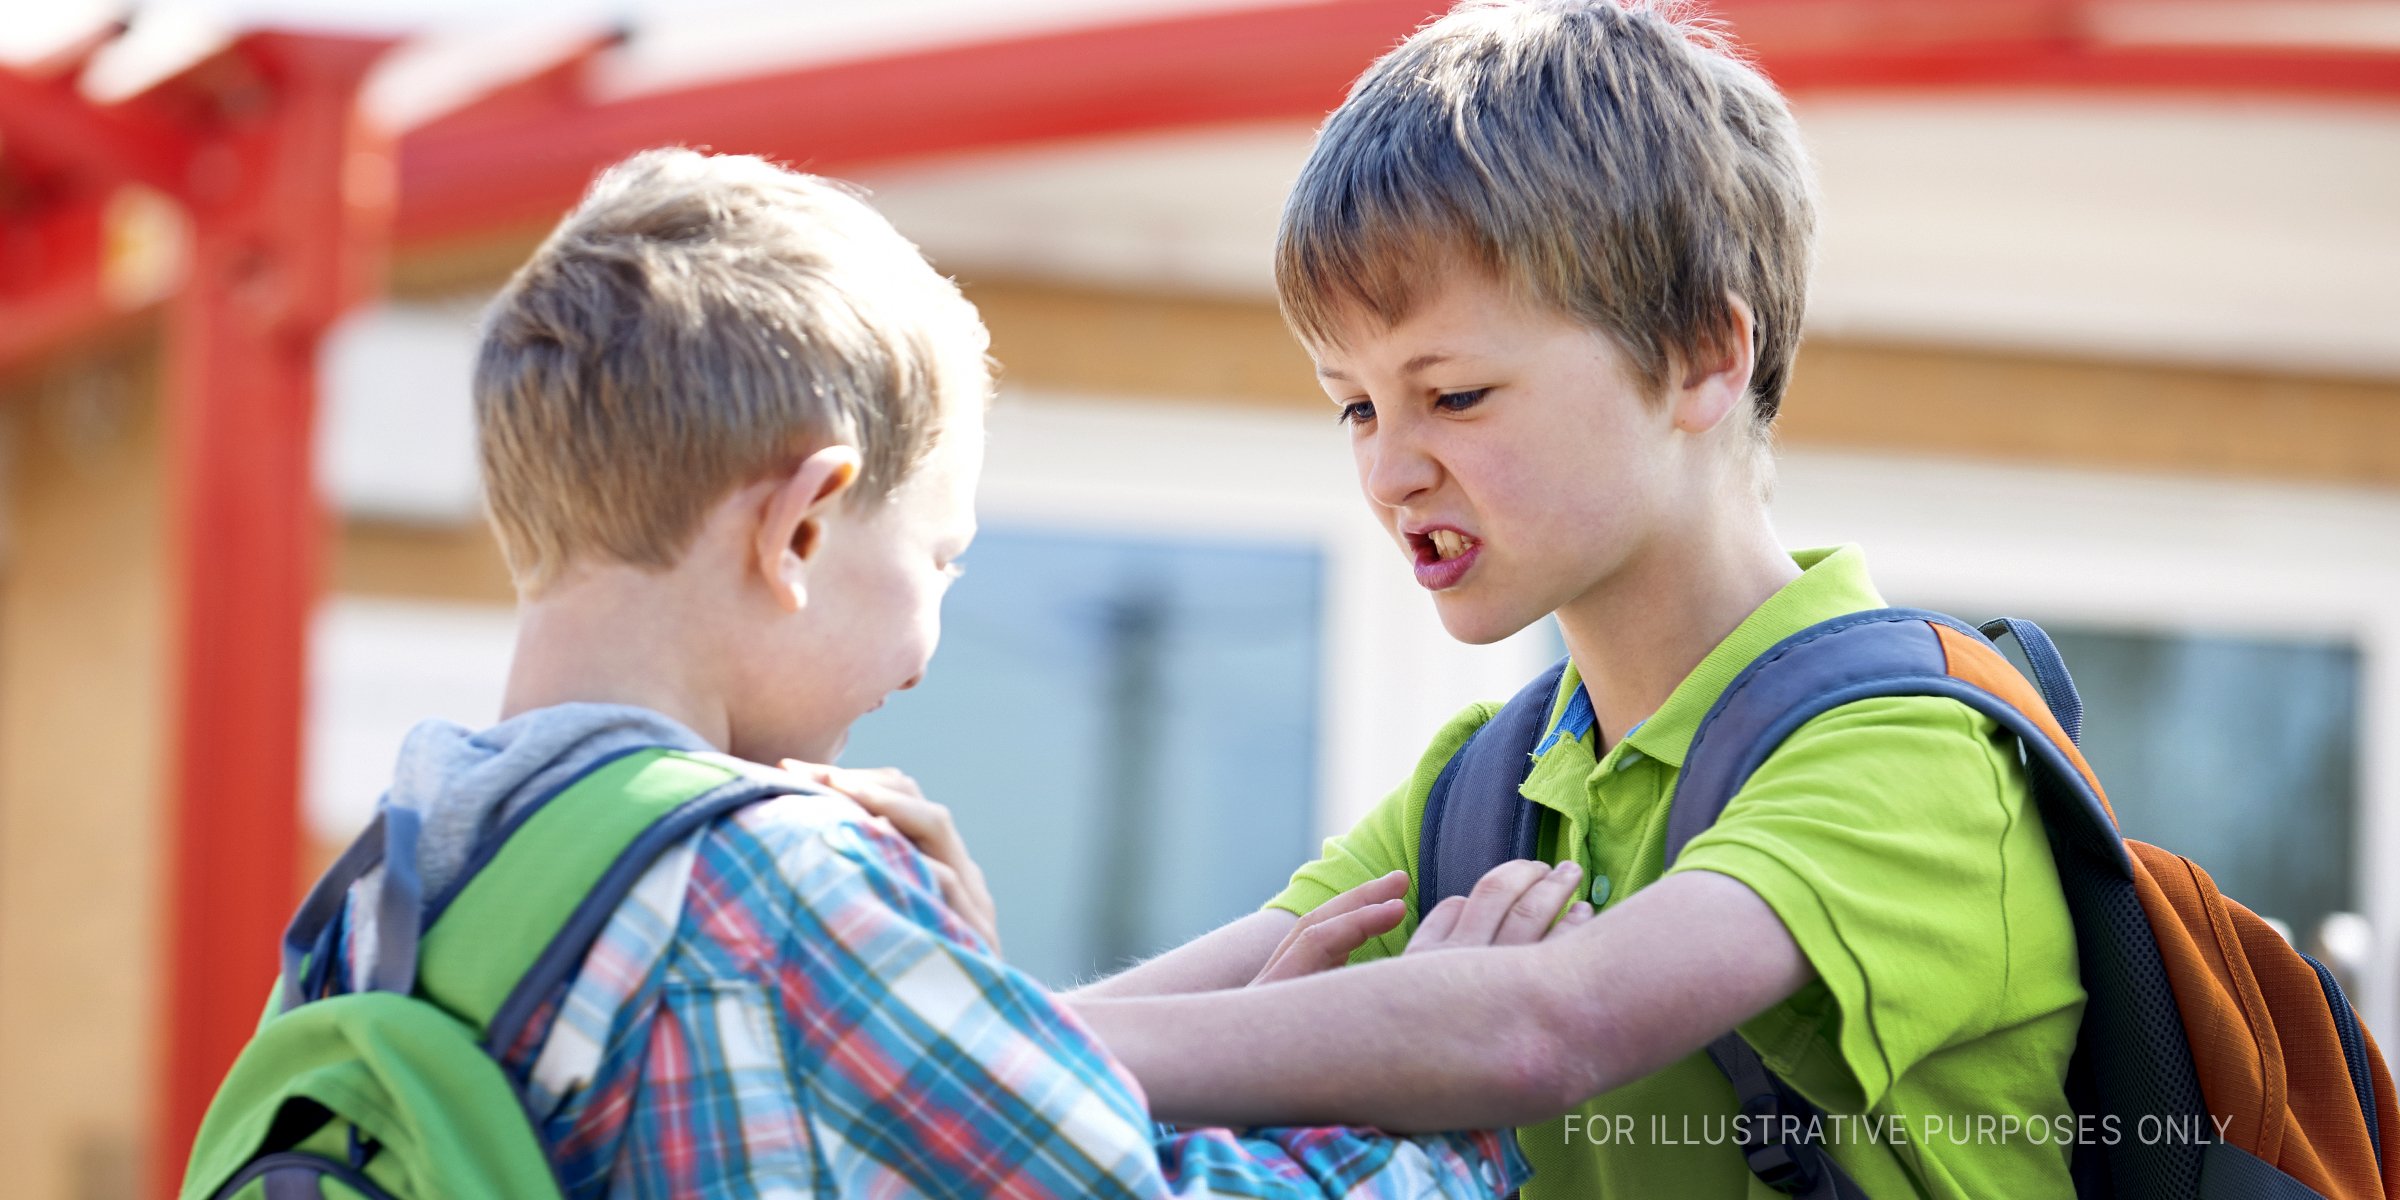 Jungs, die sich gegenseitig bekämpfen. | Quelle: Shutterstock